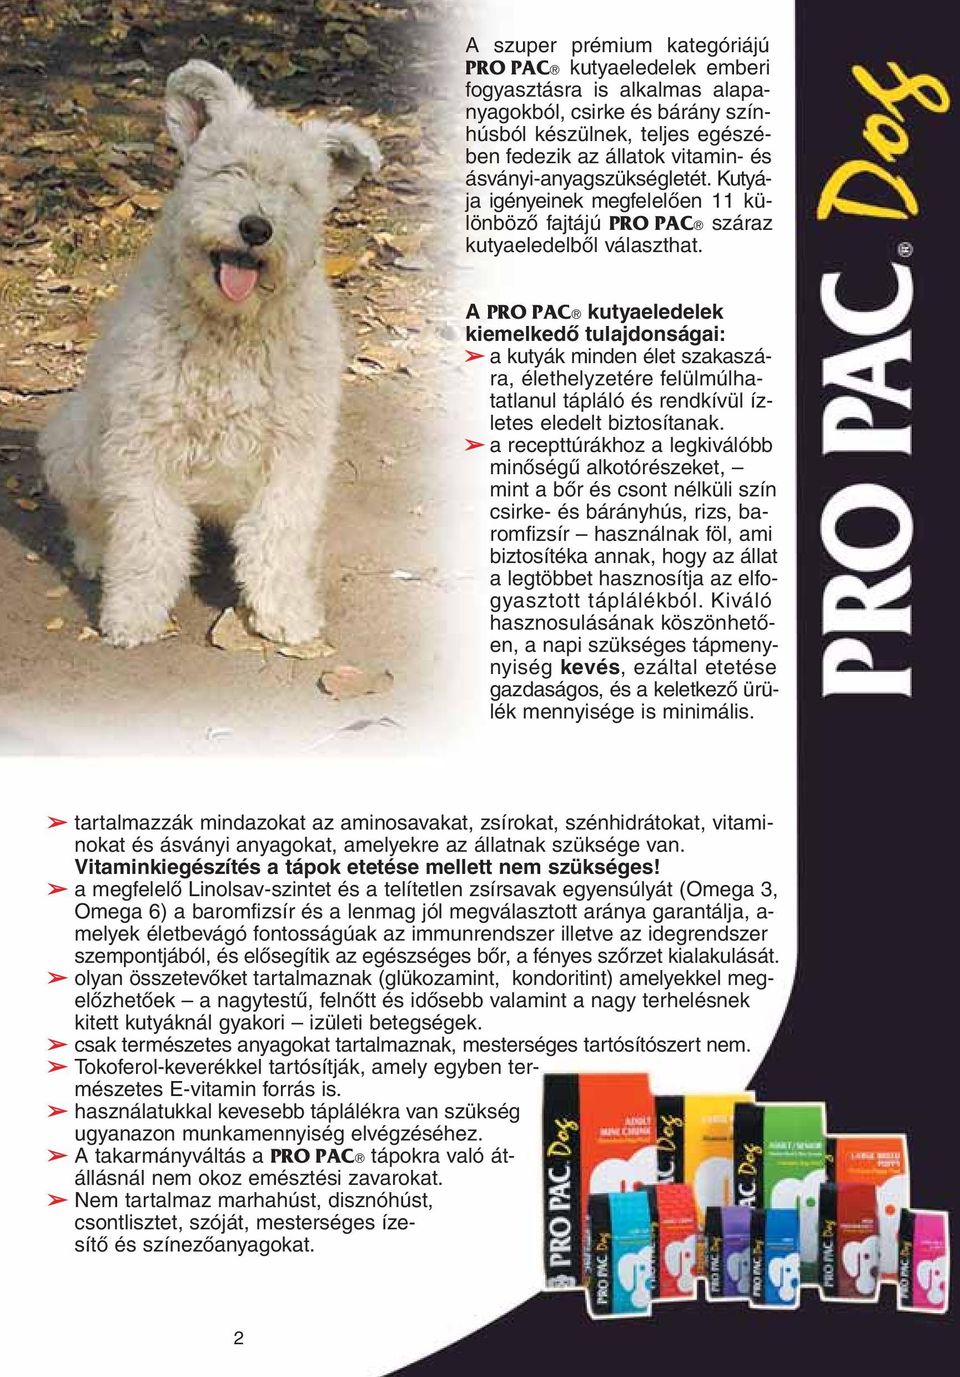 A PRO PAC kutyaeledelek ki emel kedô tulajdonságai: a kutyák minden élet szakaszára, élethelyzetére felülmúlhatatlanul tápláló és rendkívül ízletes eledelt biztosítanak.